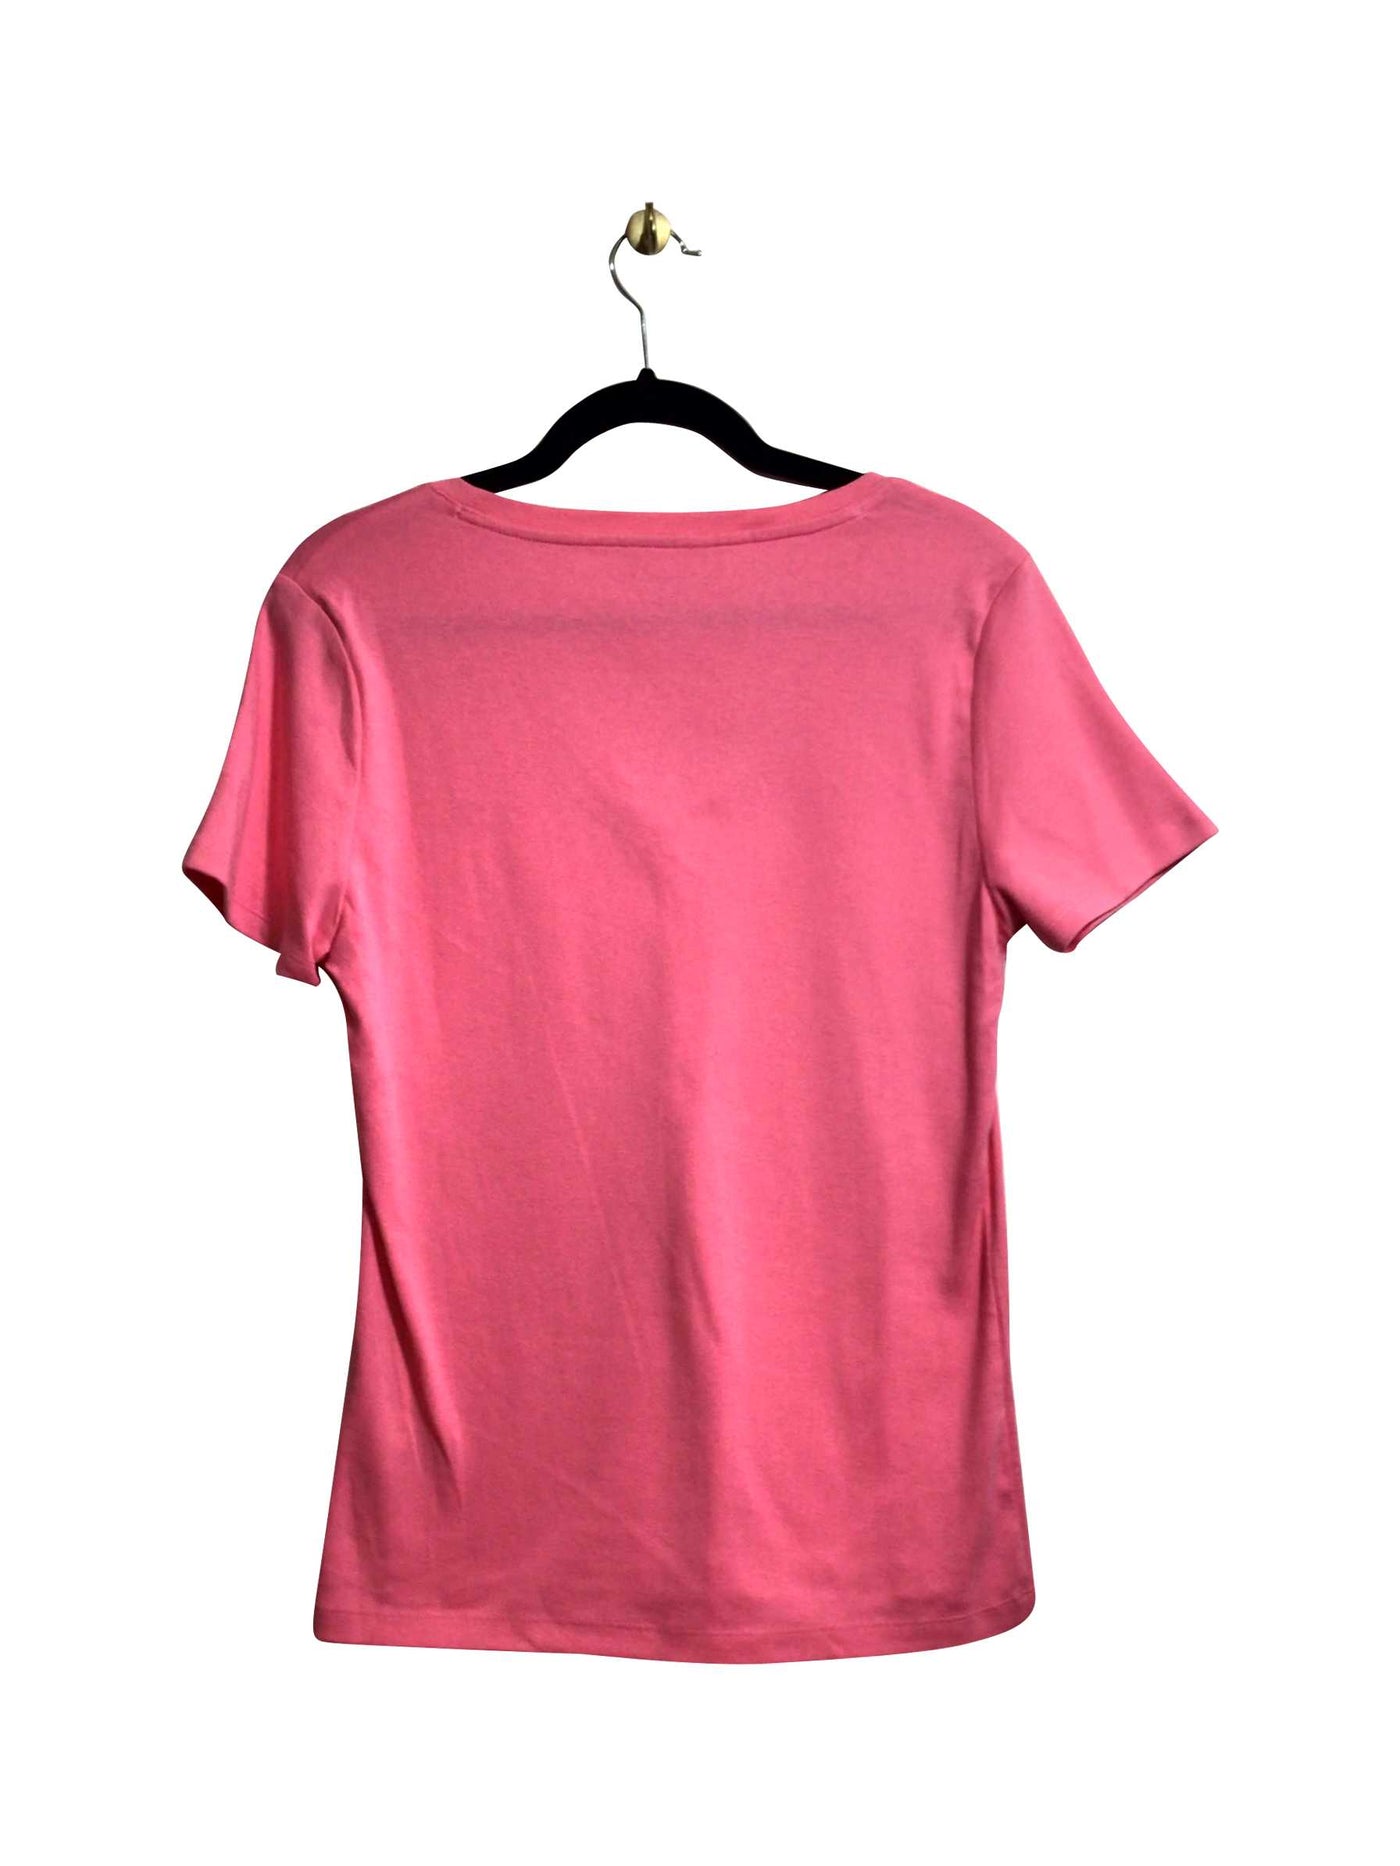 TOMMY HILFIGER Regular fit T-shirt in Pink - Size L | 16 $ KOOP